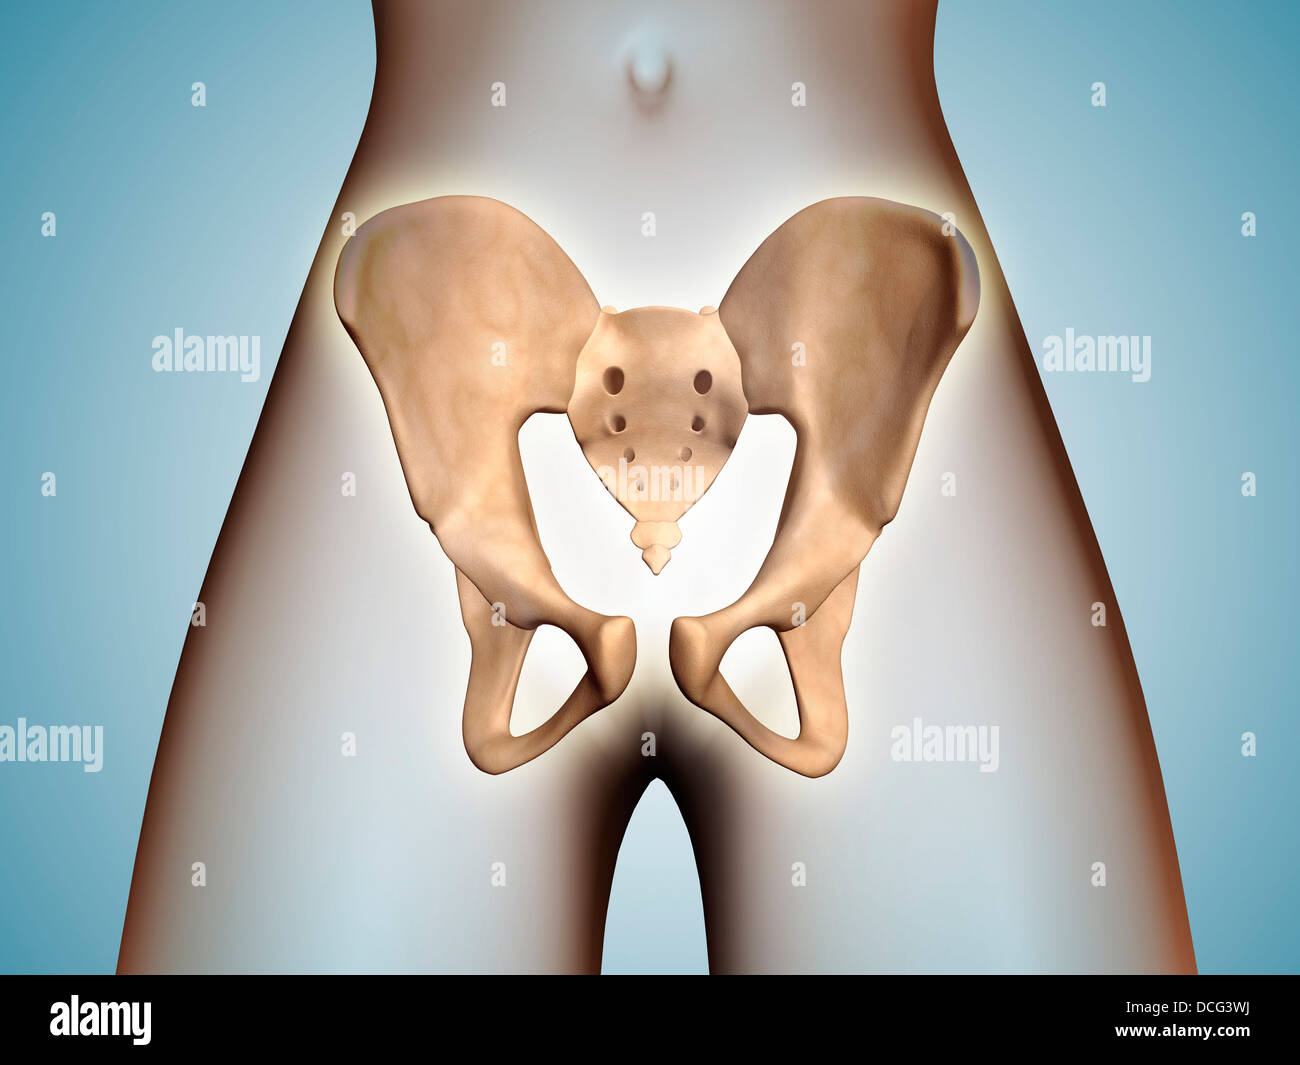 Anatomia di osso pelvico sul corpo femminile. Foto Stock